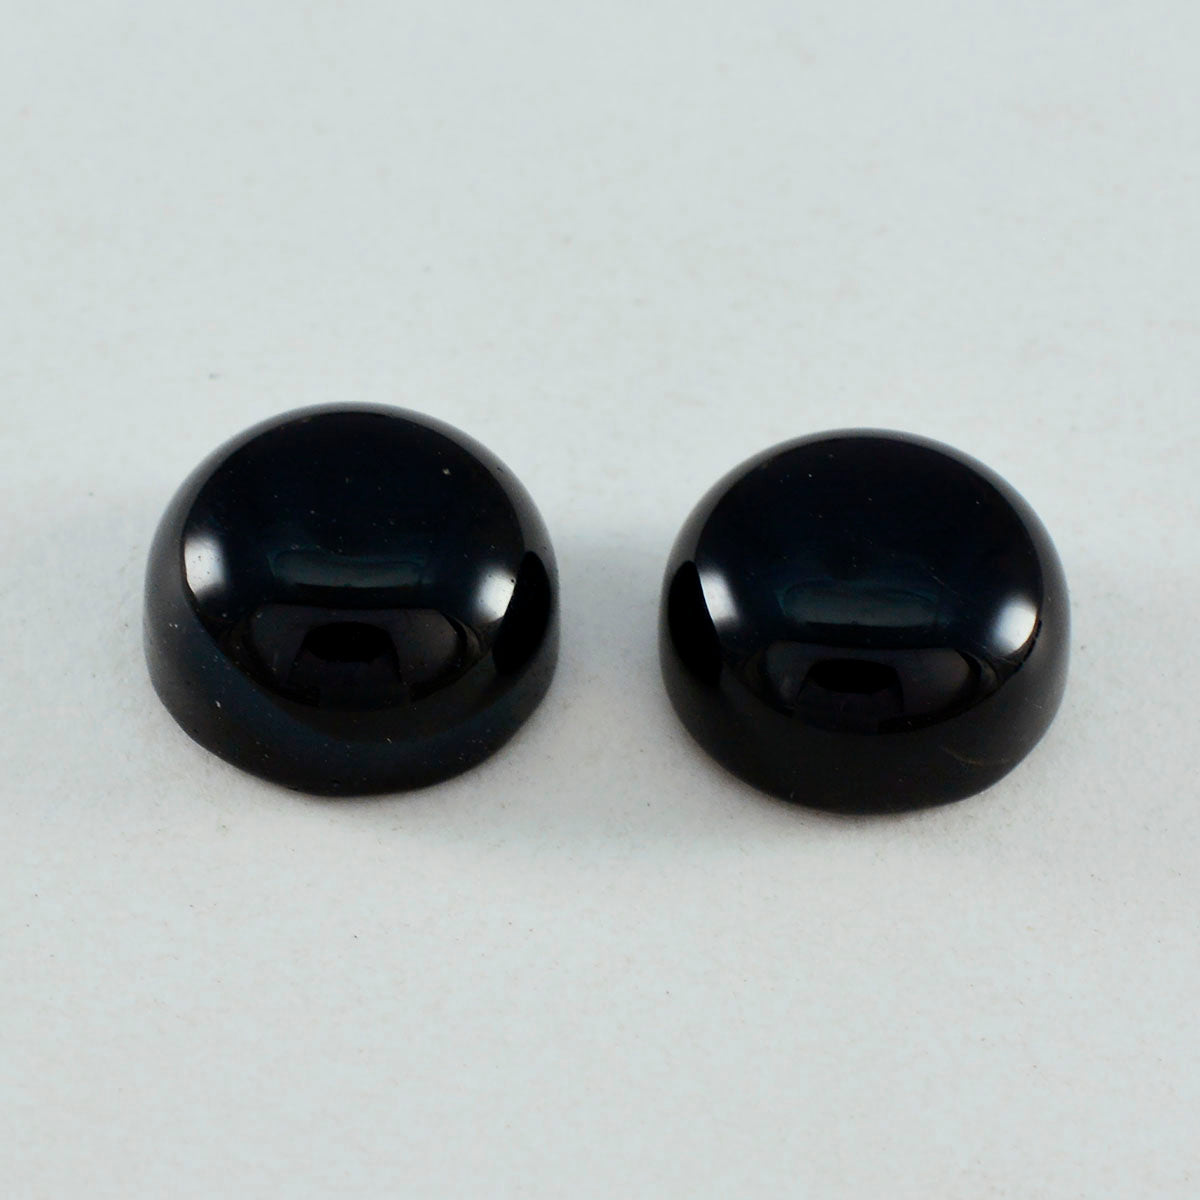 Riyogems 1 pieza cabujón de ónix negro 13x13mm forma redonda piedra suelta de buena calidad